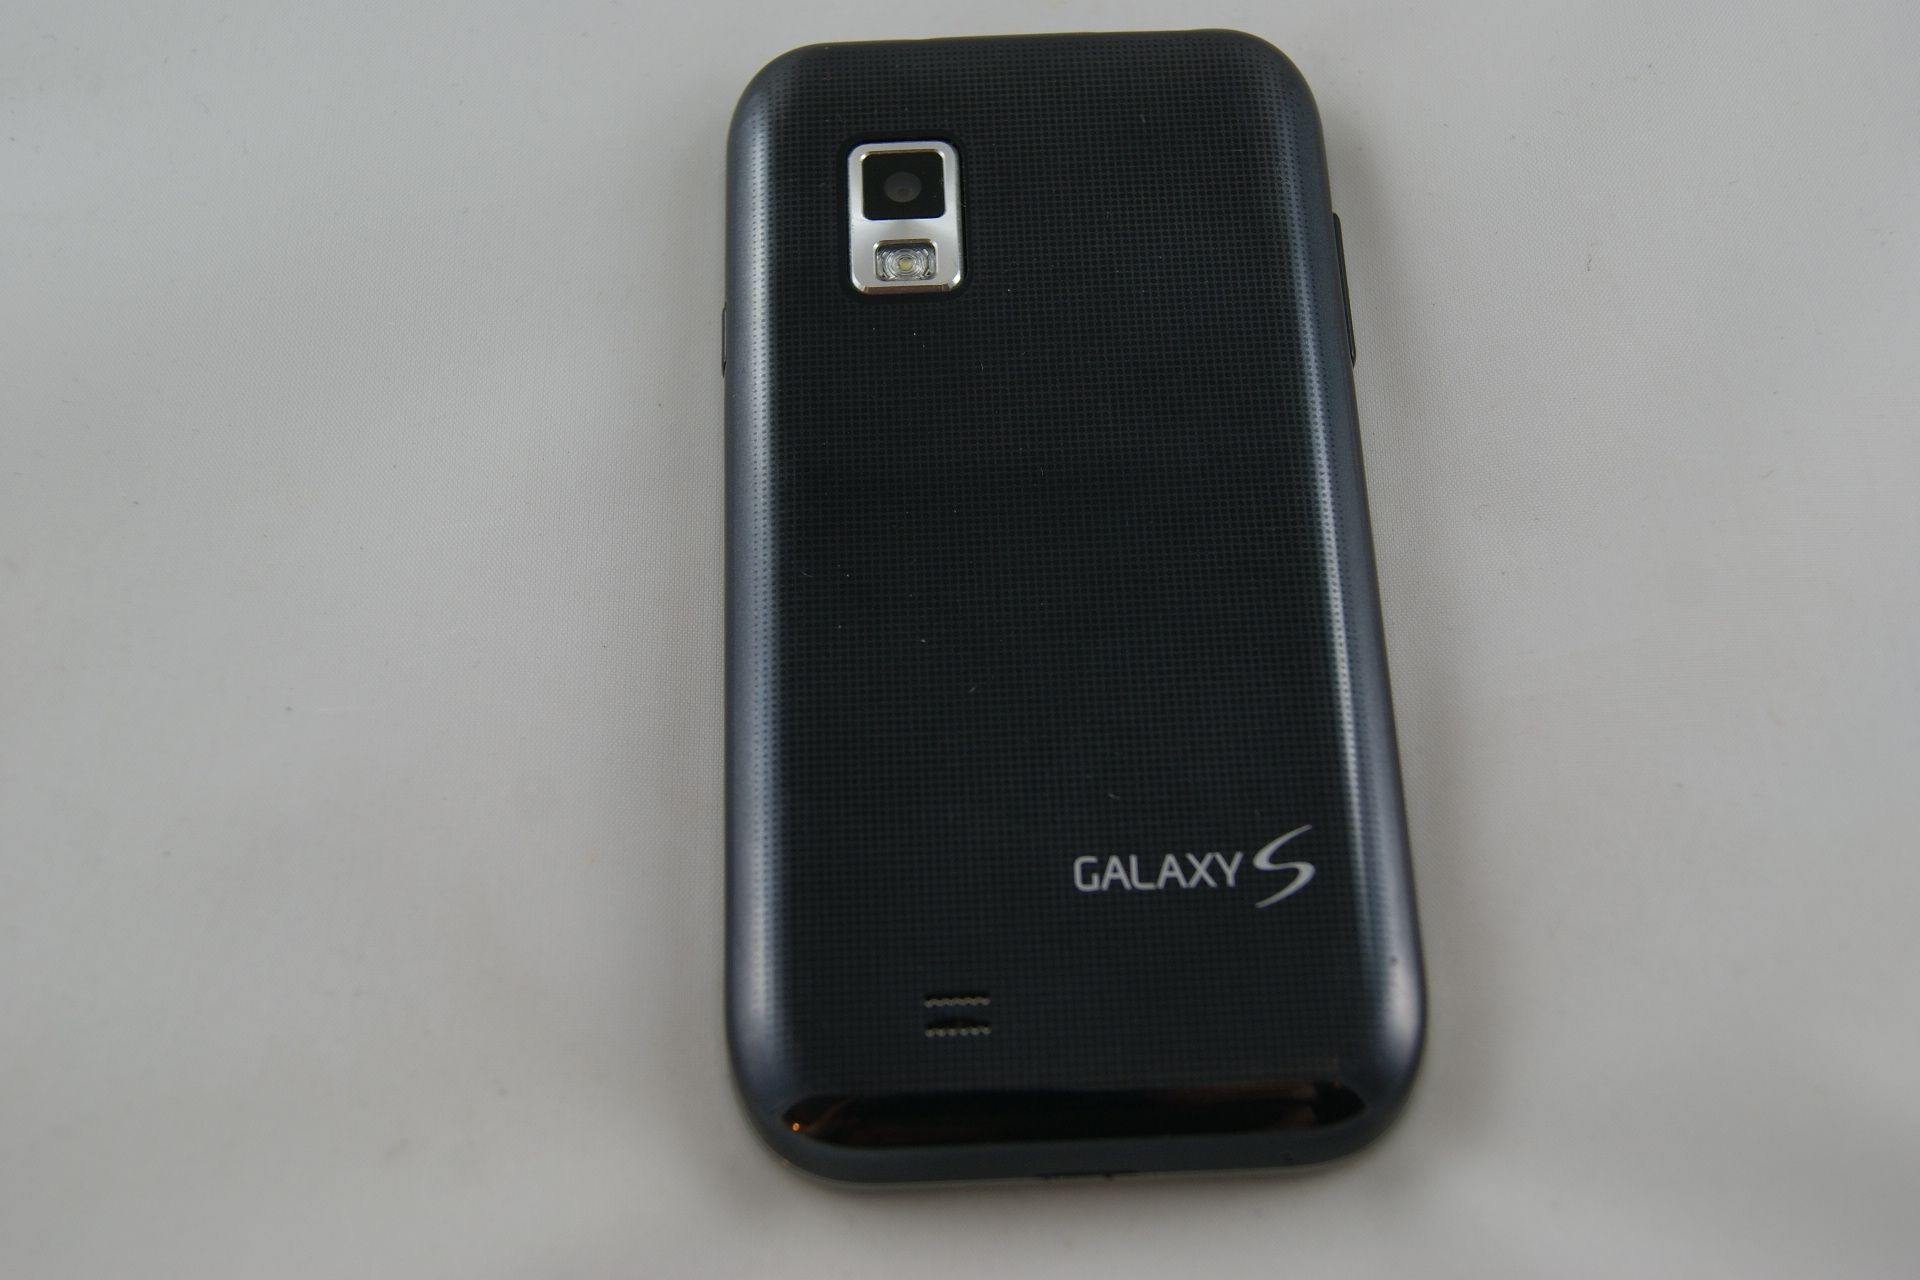 Samsung SCH i500 Showcase C Spire Cellular South ◄♦♦▌excellent 